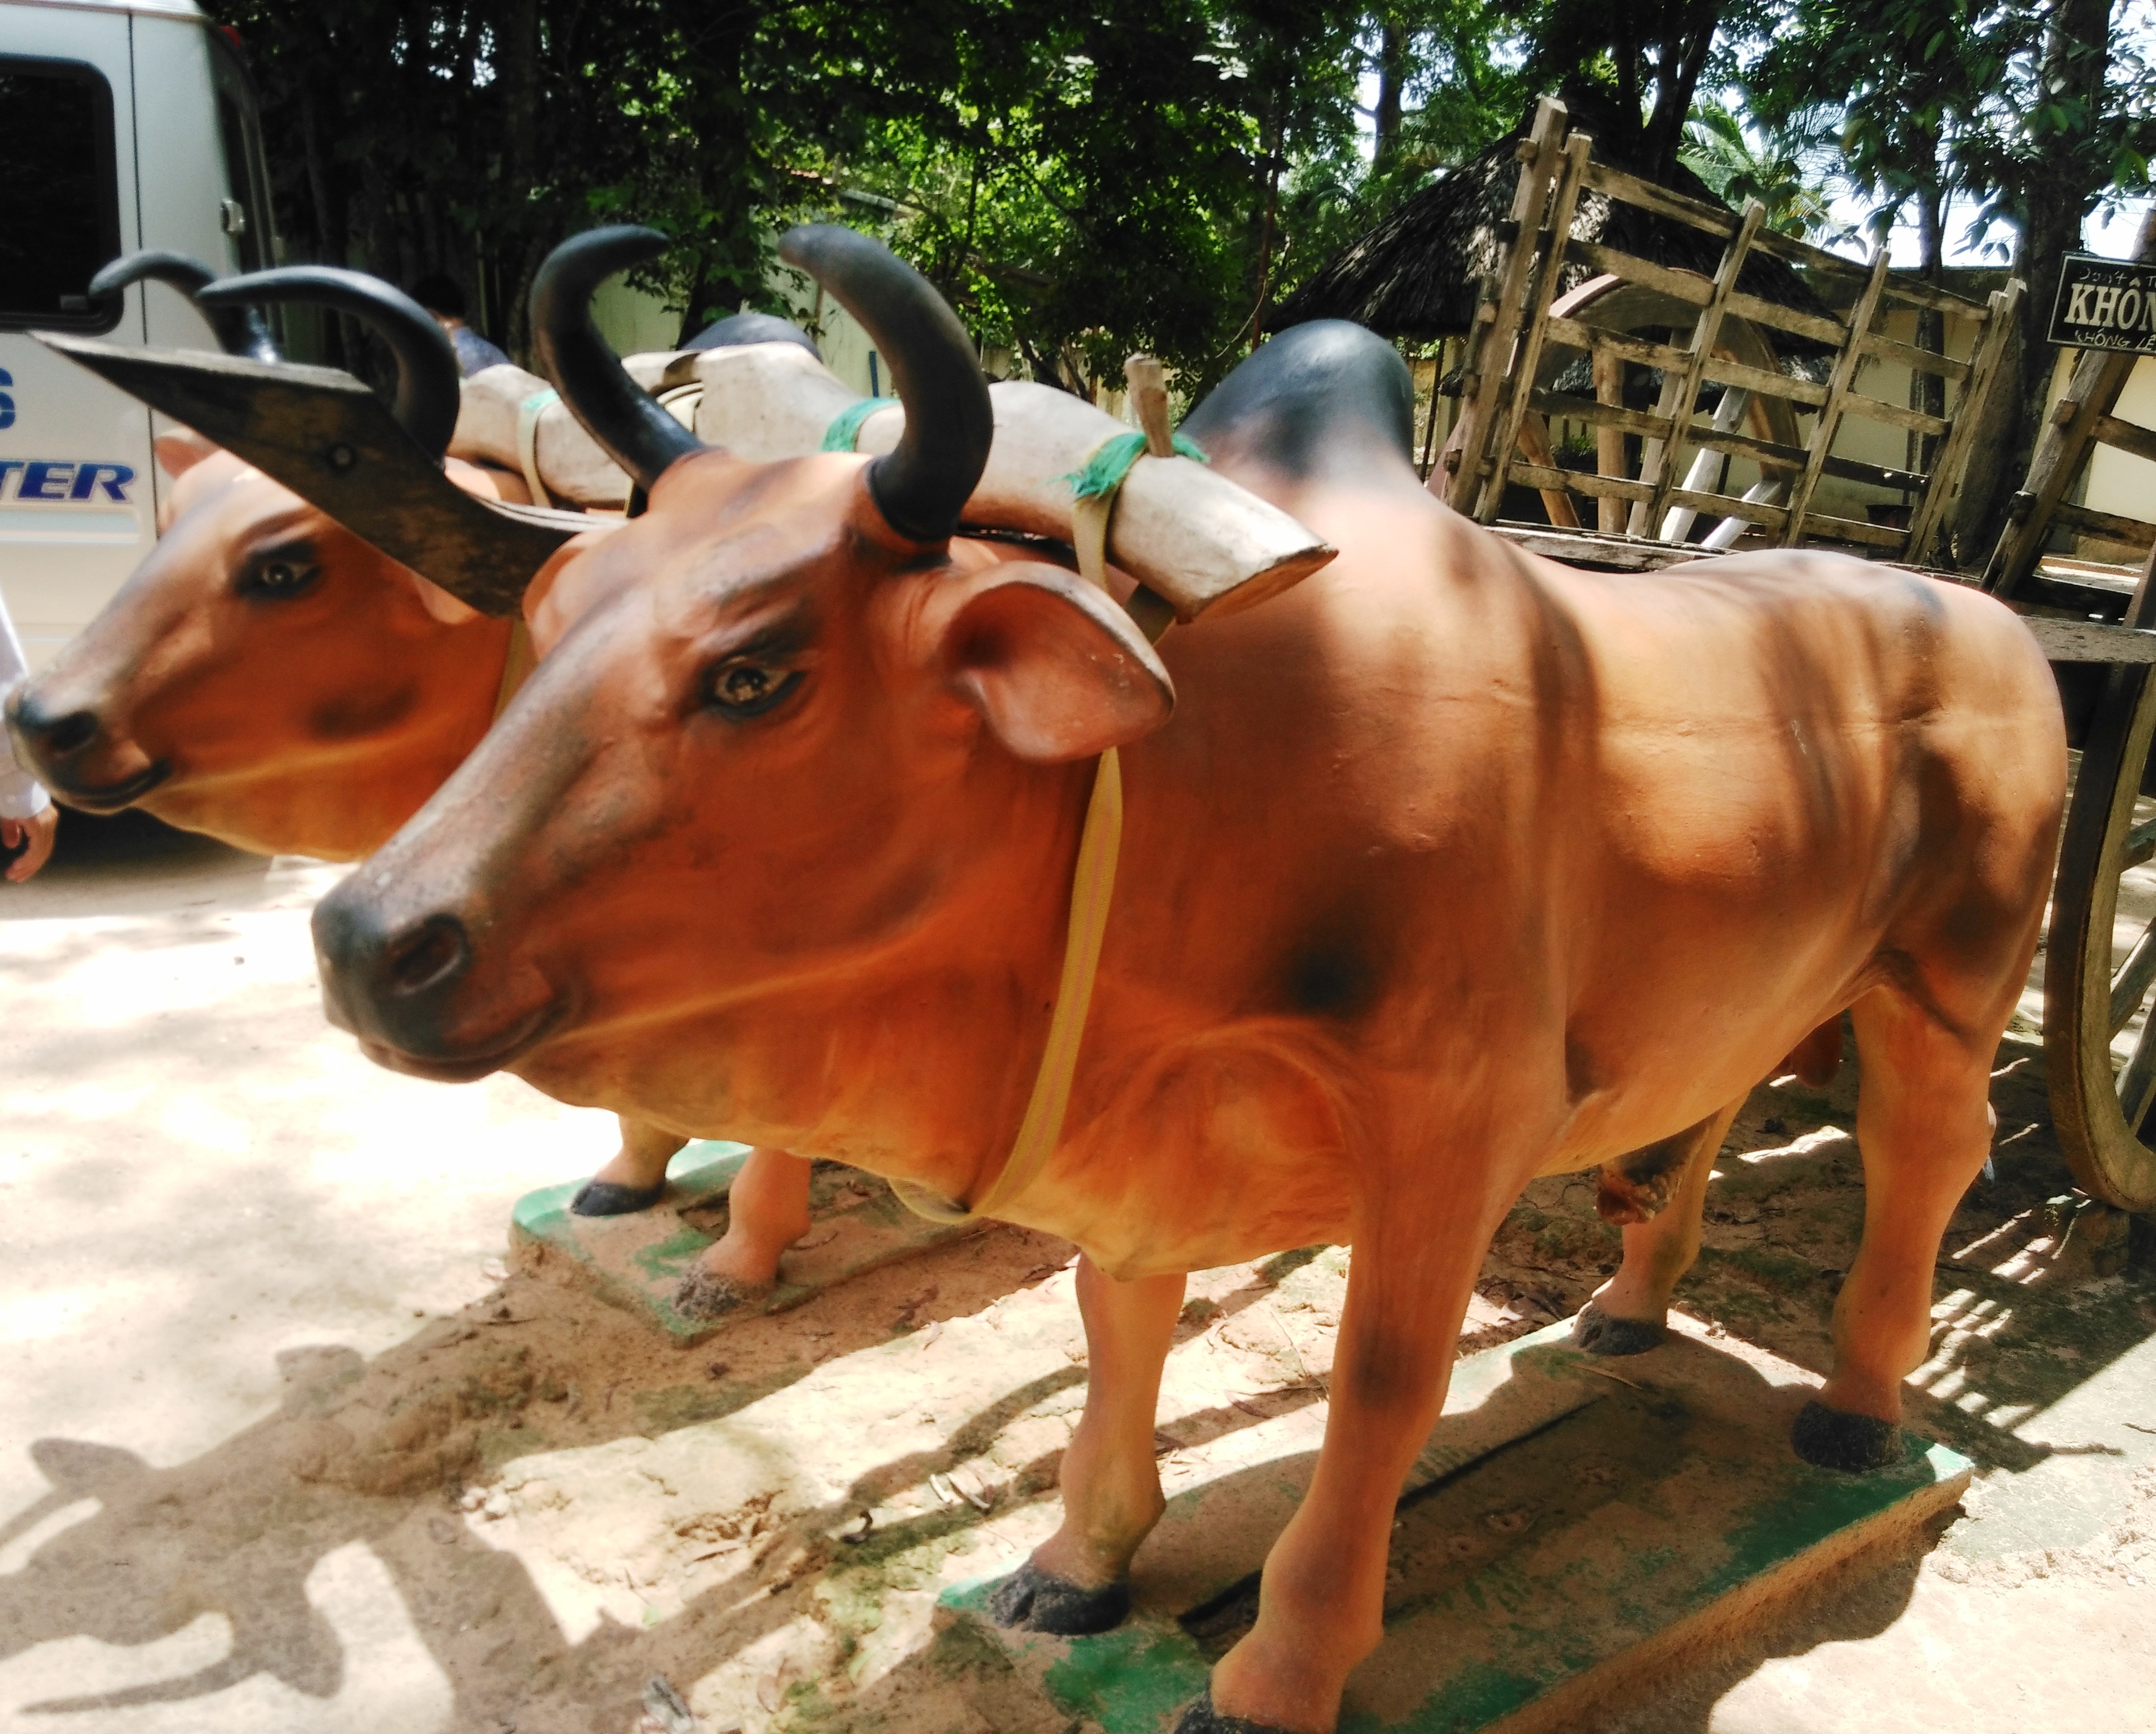 Xe bò Củ Chi là một trong những điểm đến hấp dẫn không thể bỏ qua khi du lịch tại Sài Gòn. Hãy để đôi chân mình đưa bạn đến vùng đất lịch sử và thưởng thức trào lưu độc đáo của người dân địa phương.